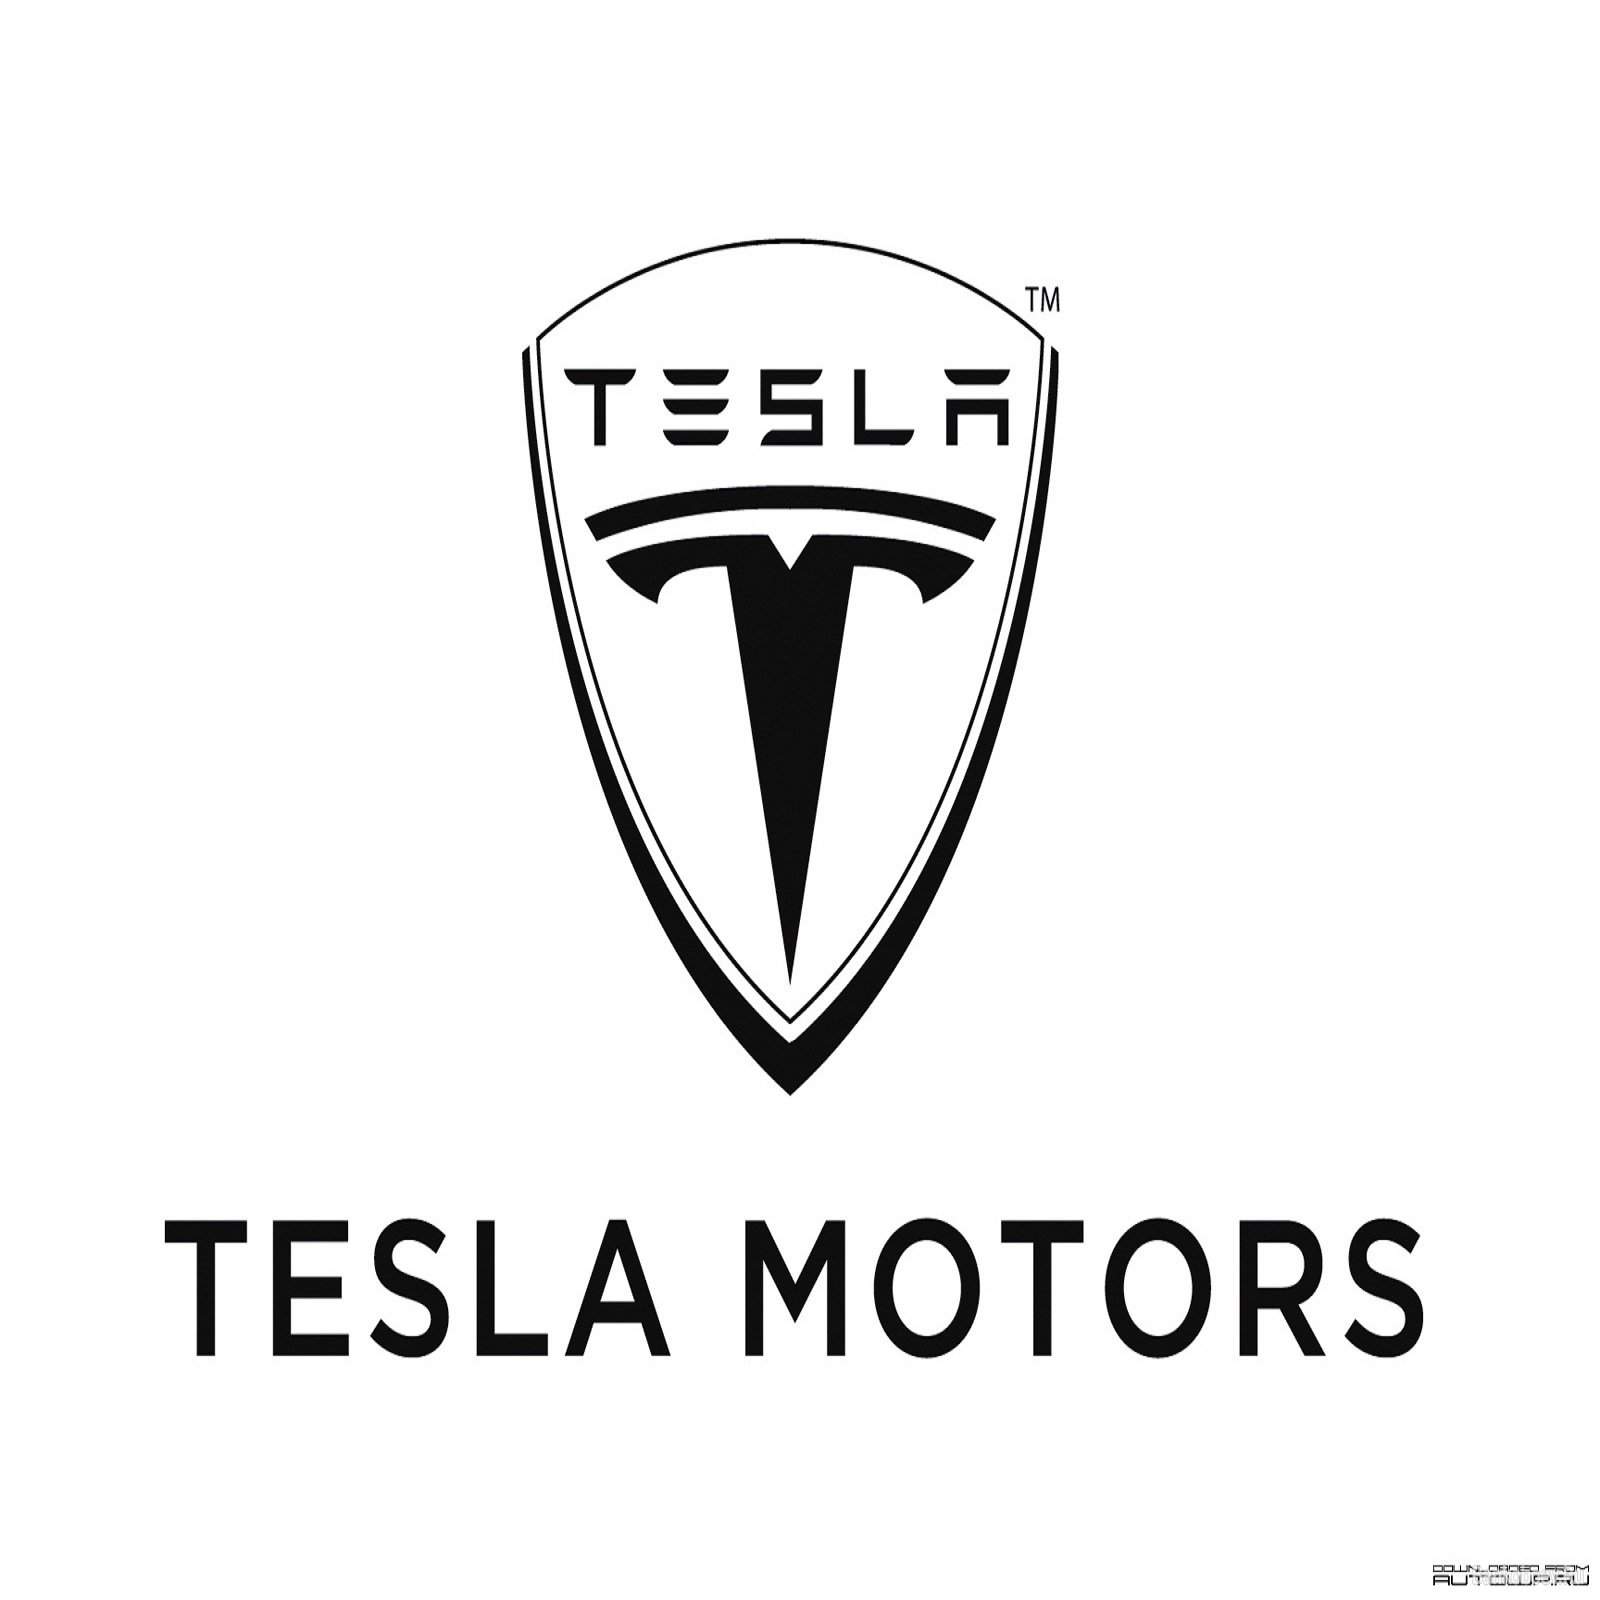 Знак теслы на машине. Tesla Motors автомобили. Марки машин значки Тесла. Tesla марка машины. Логотип автомобиля Тесла.